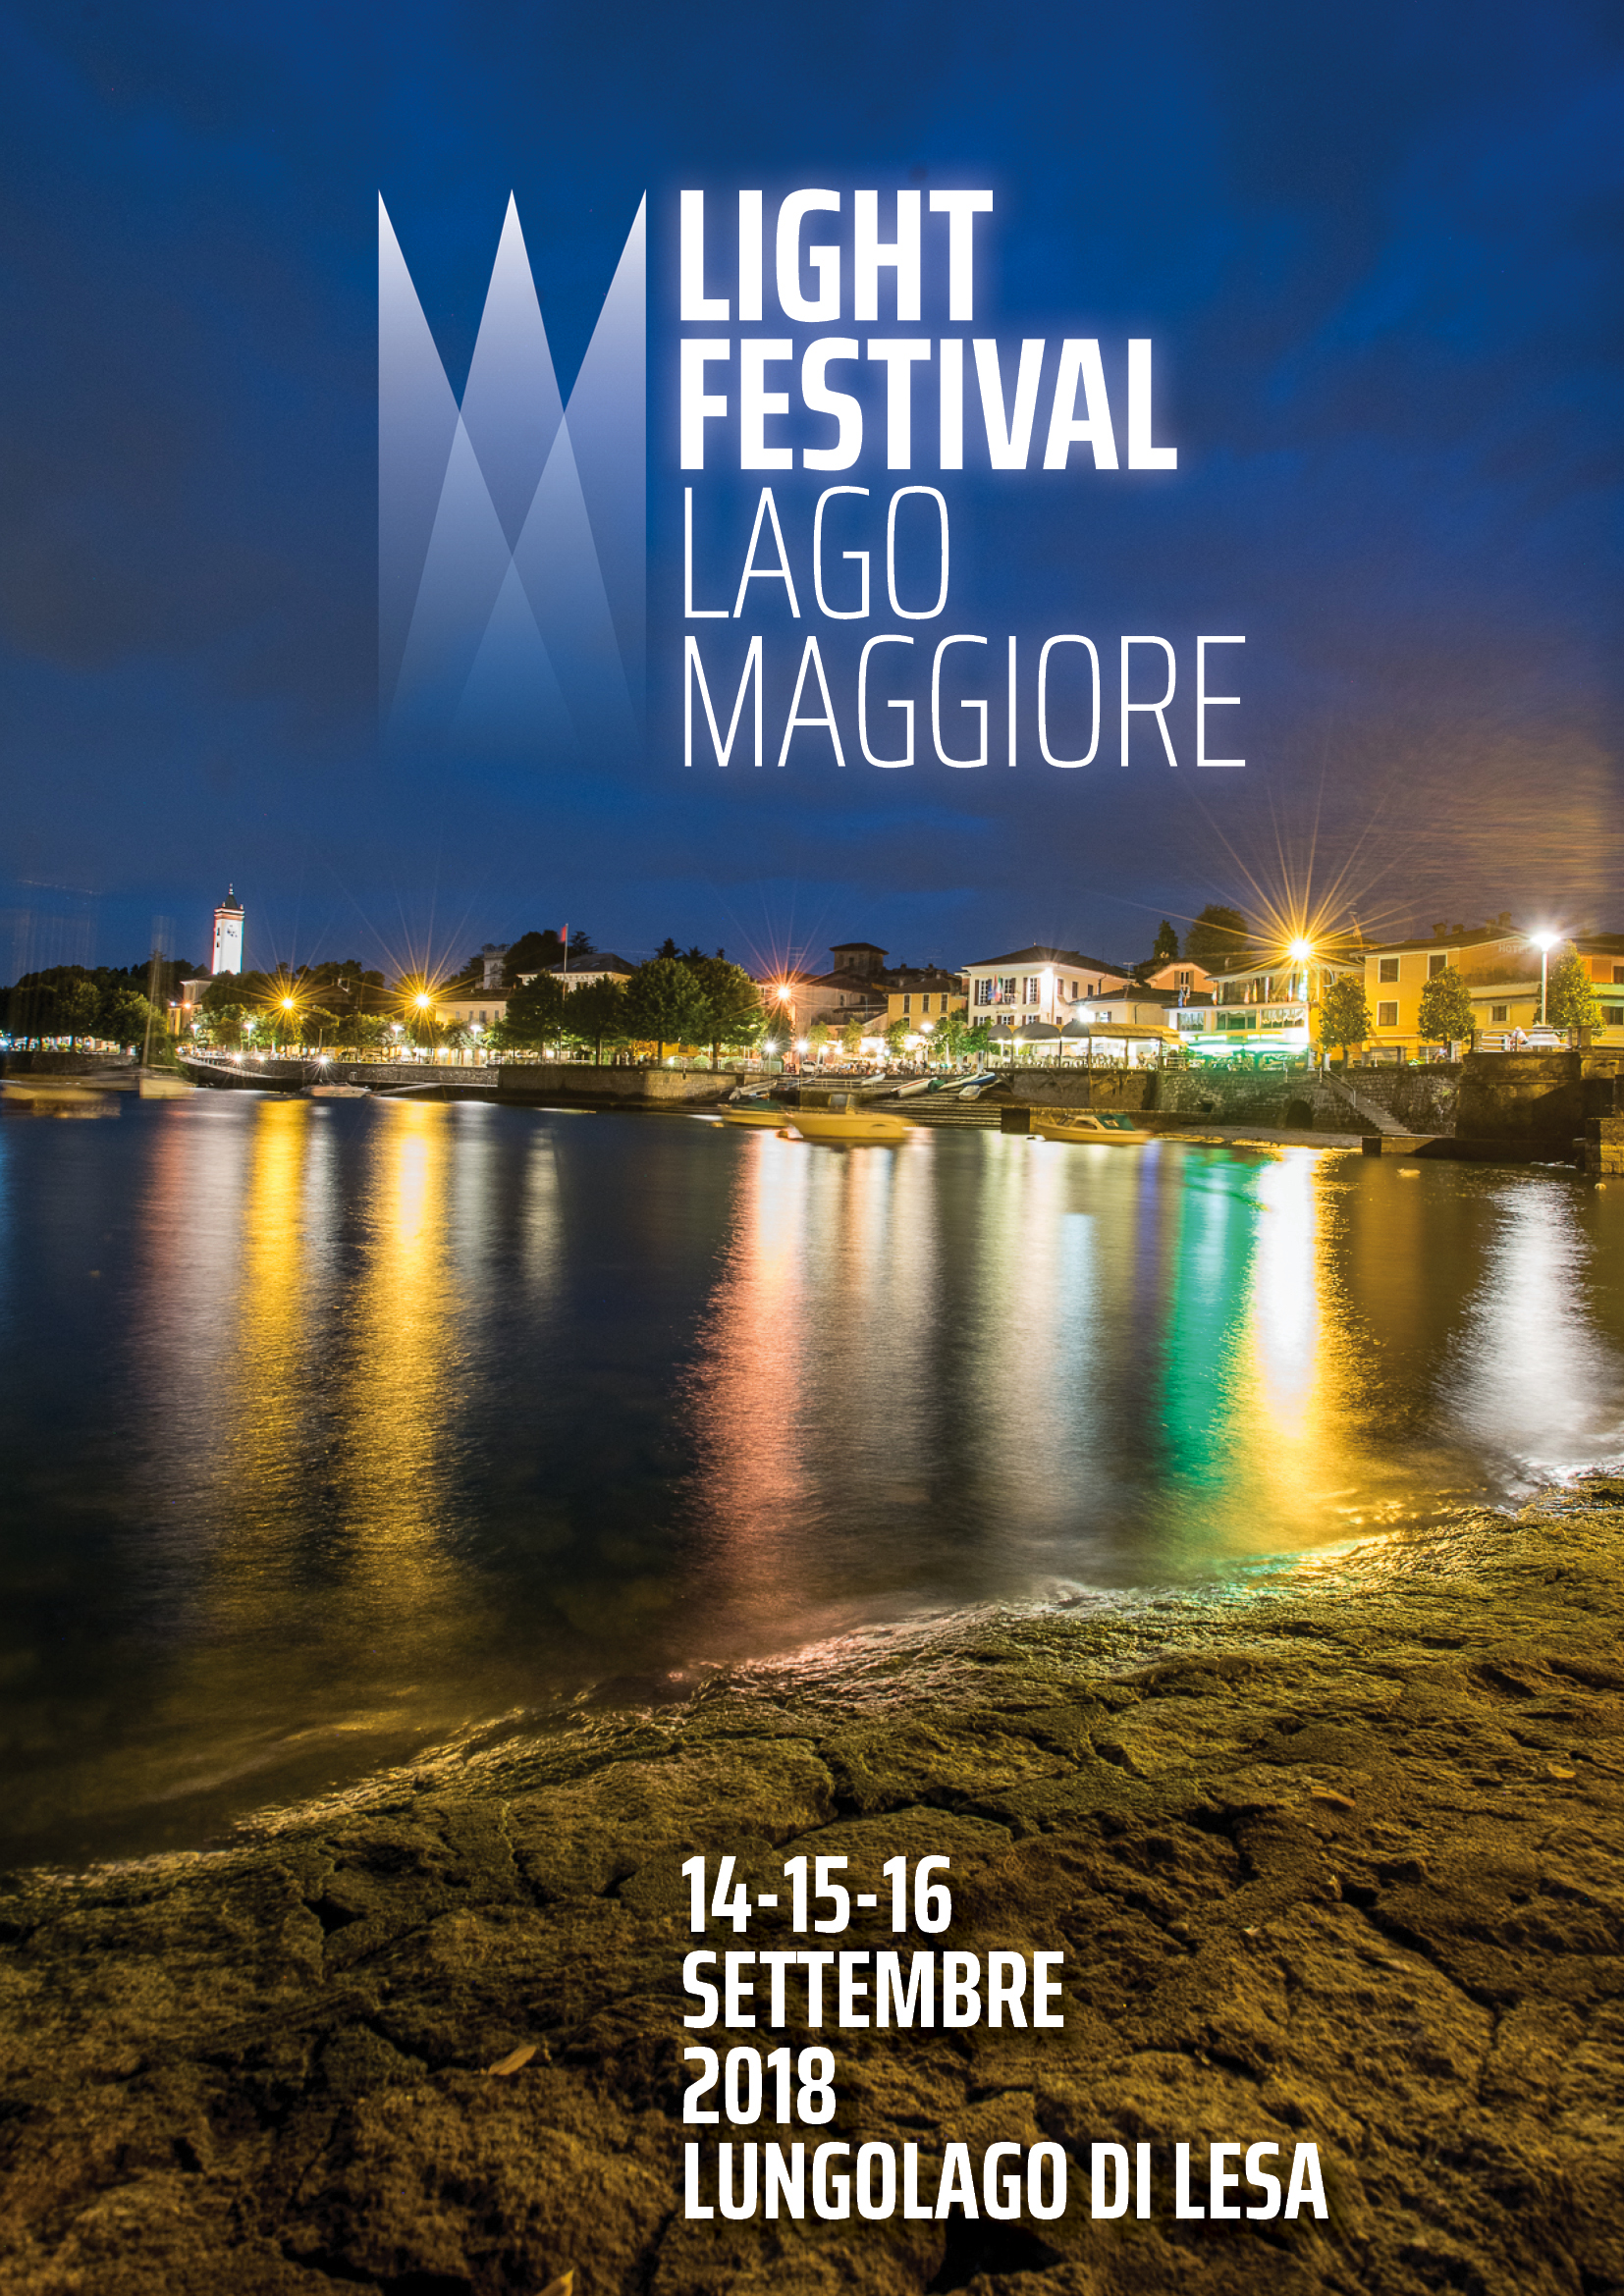 Light Festival Lago Maggiore